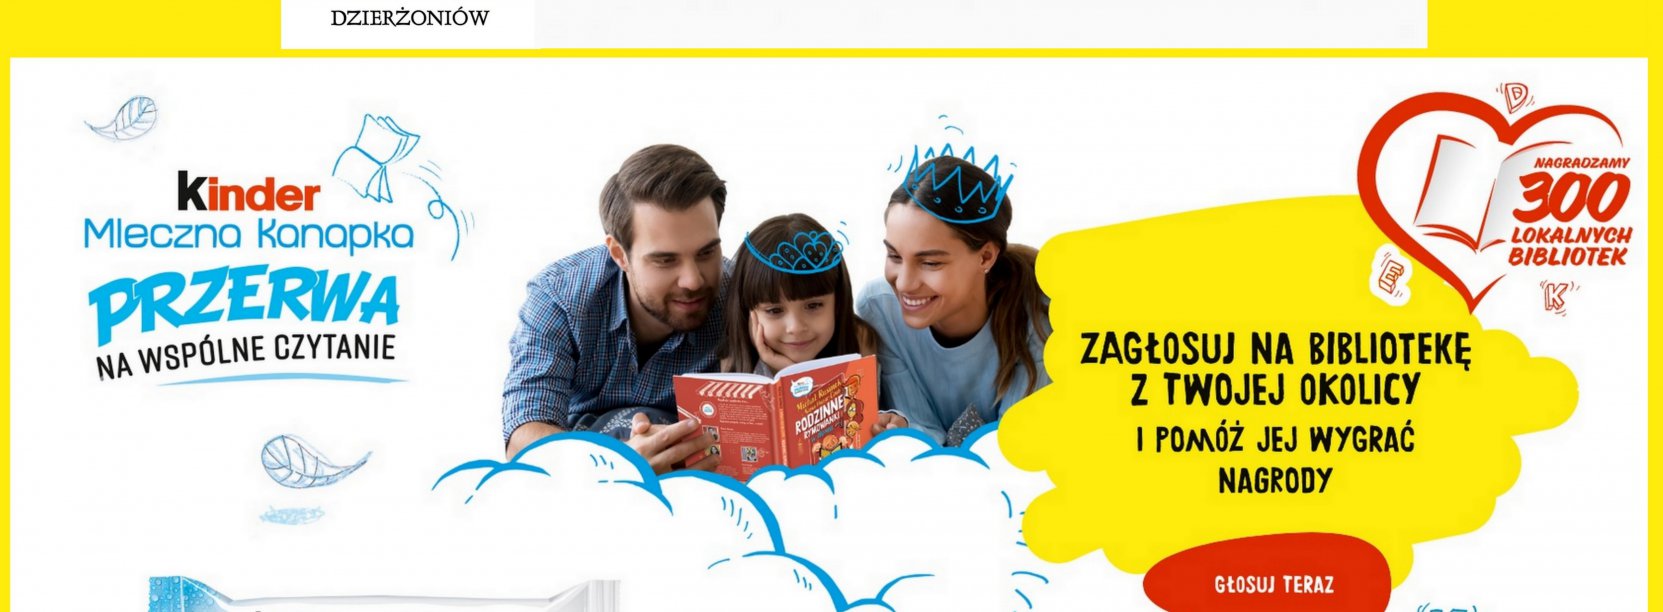 Grafika zwierająca informacje z tekstu i zdjęcie rodziców i małego dziecka czytającego książkę